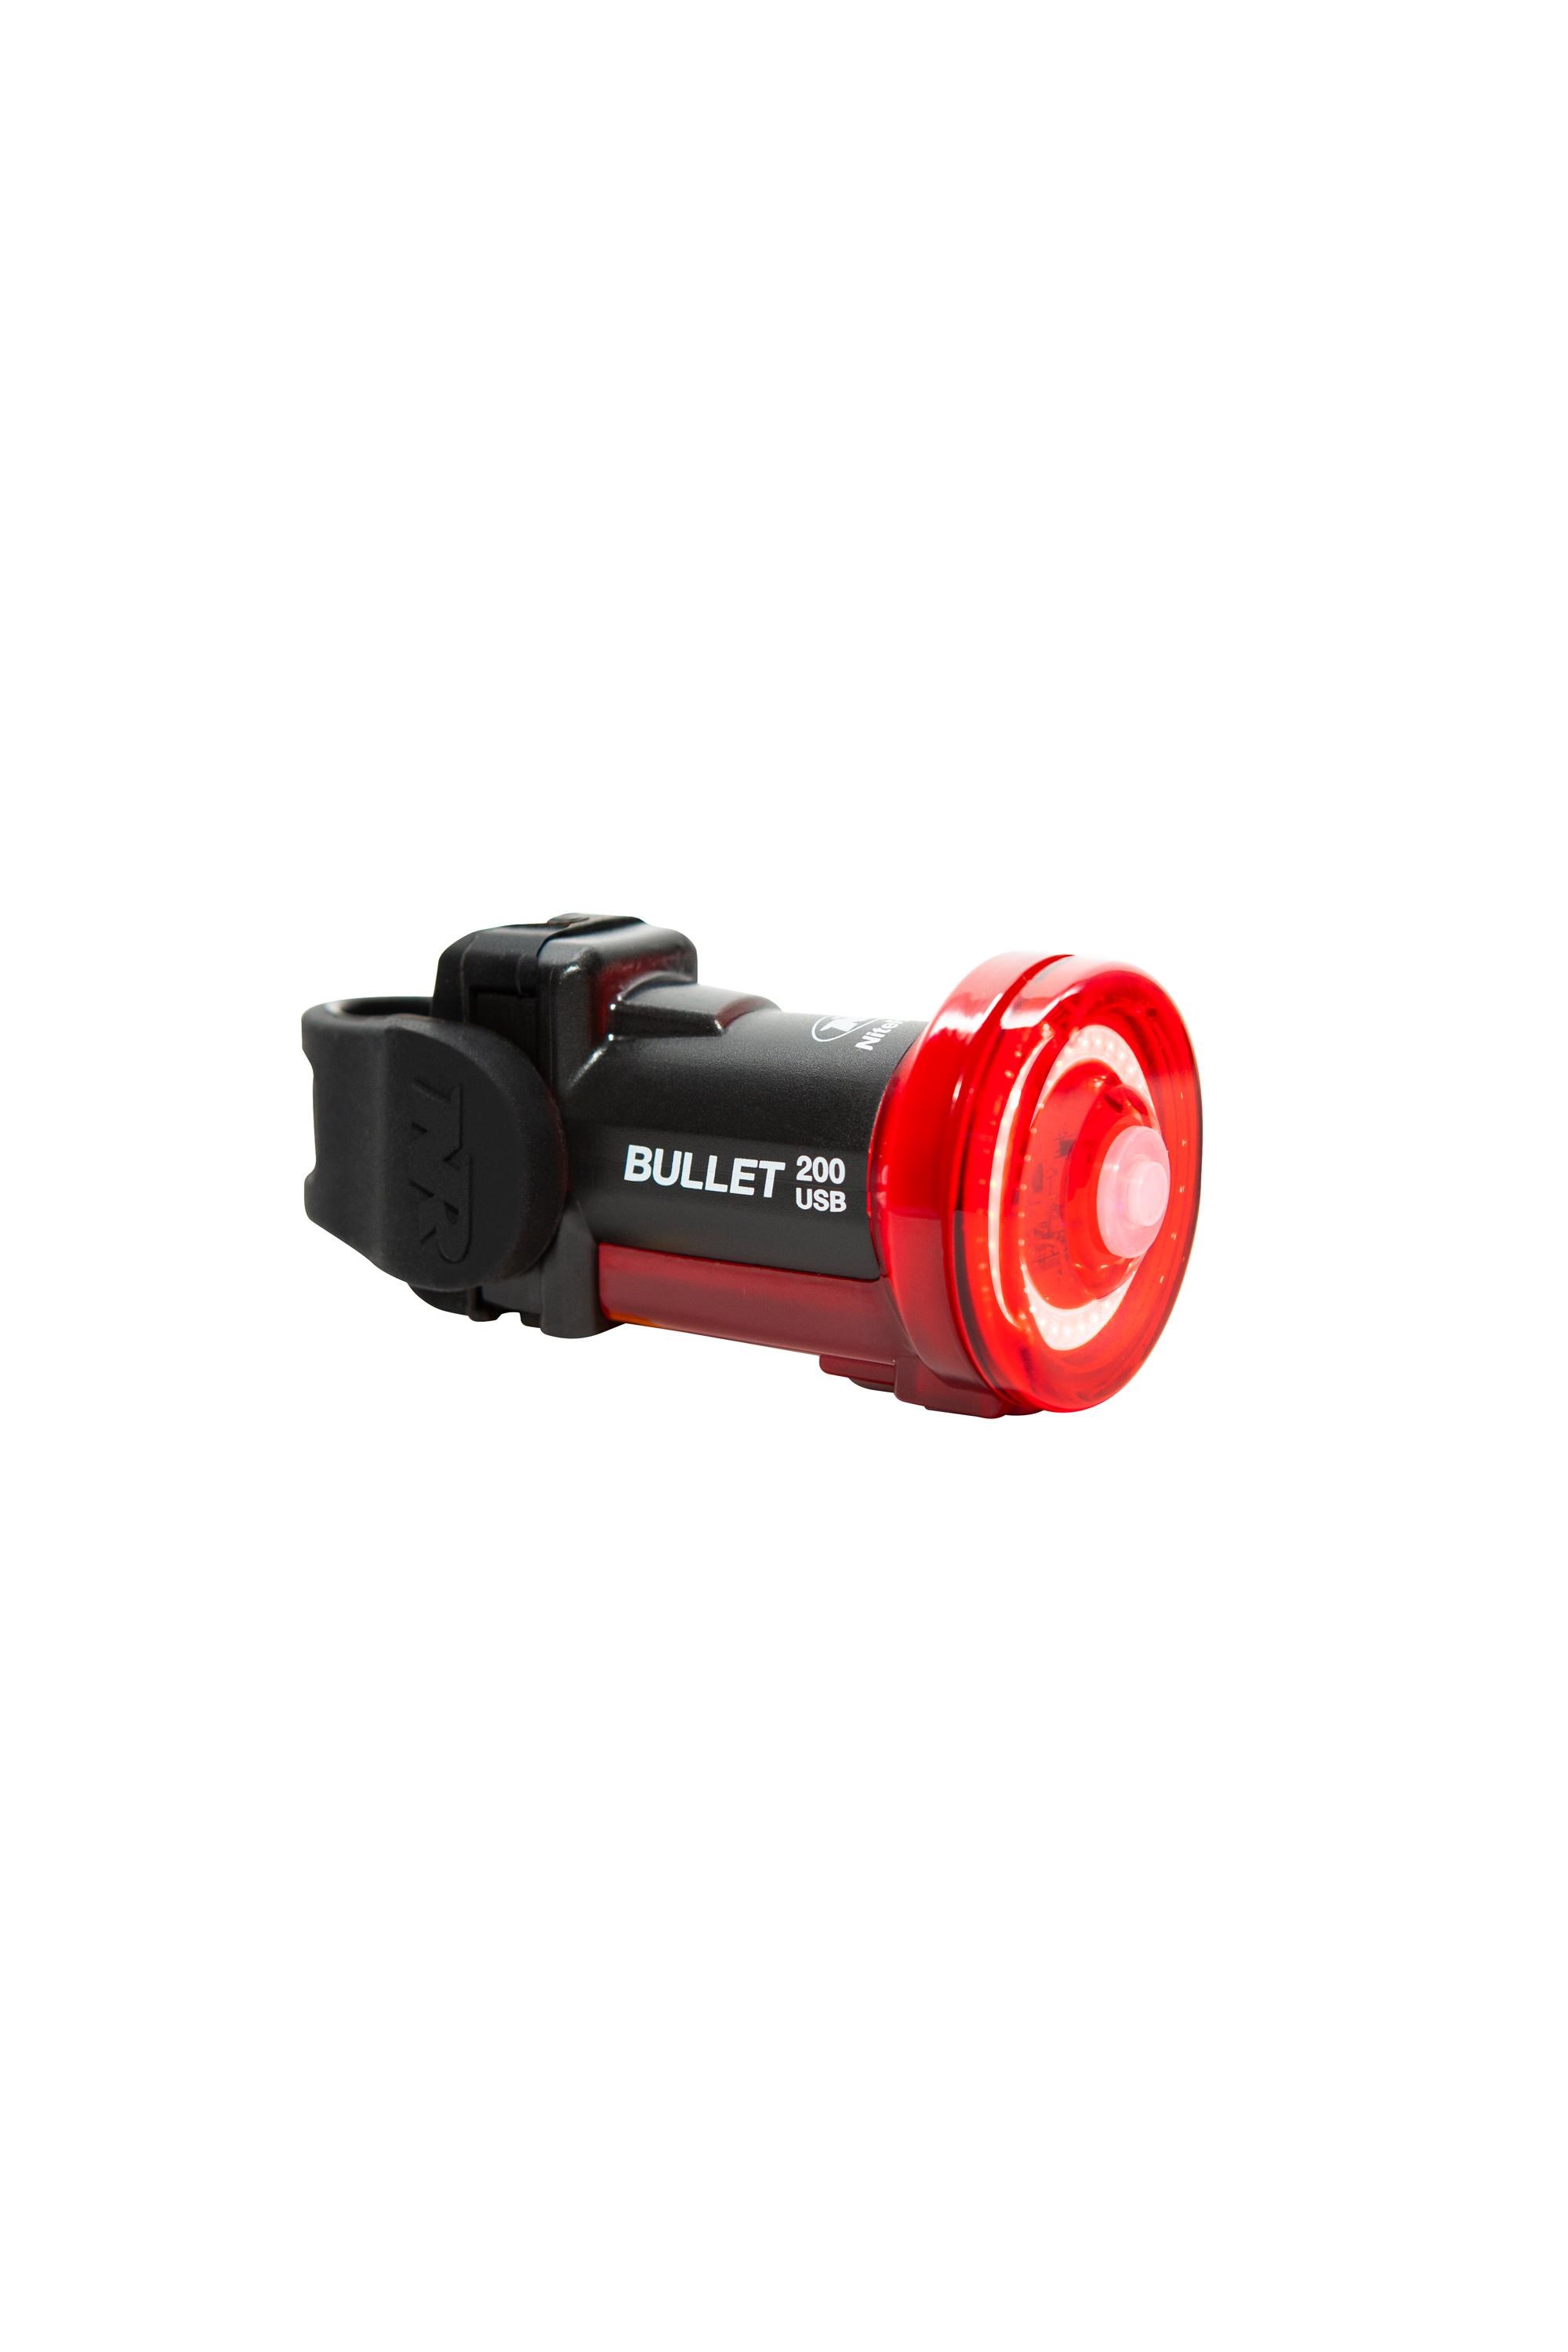 Bullet 200 Rear Bike Light -